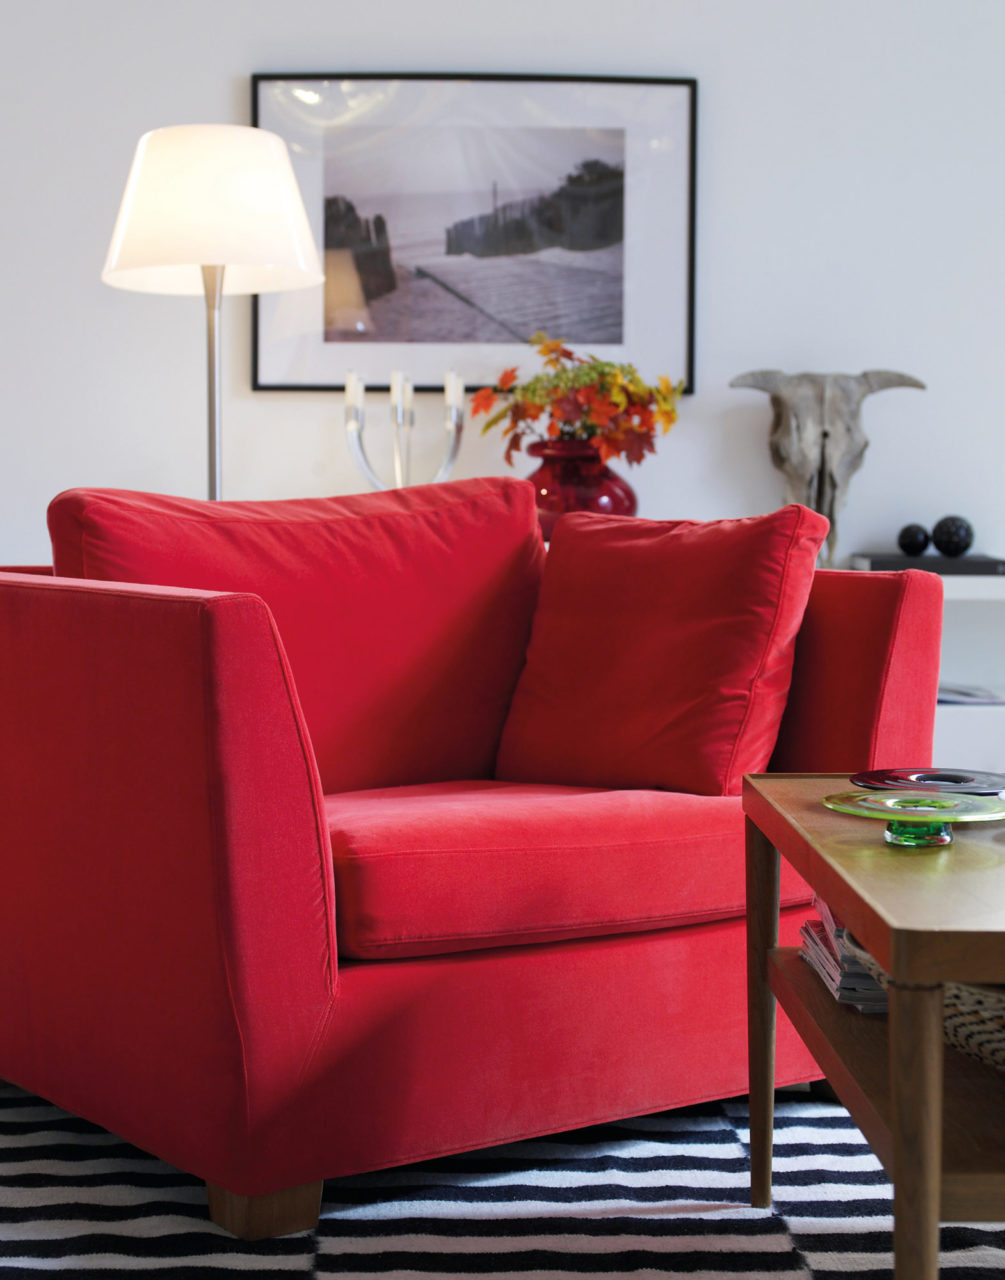 Stor röd sammetsfåtölj och brunt soffbord, i bakgrunden en tänd golvlampa och tavla på väggen.